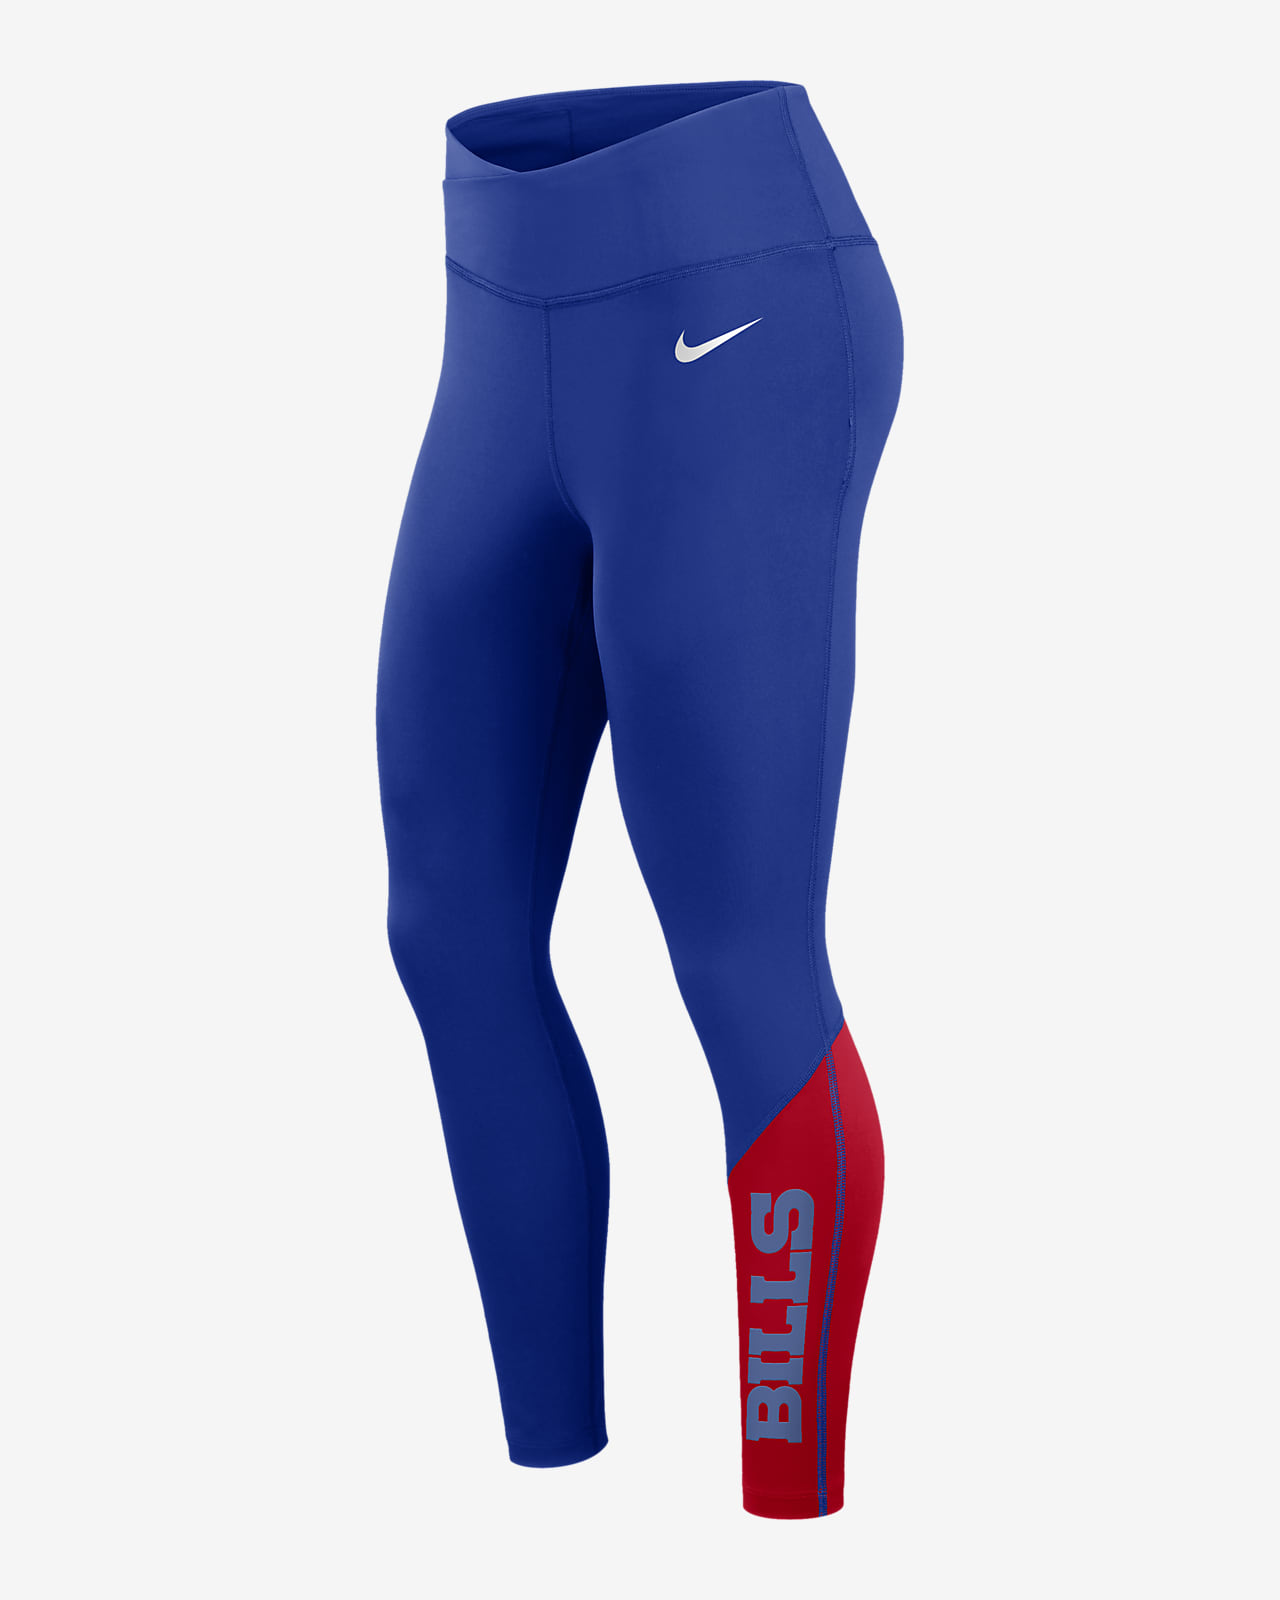 Leggings de 7/8 para mujer Nike Dri-FIT (NFL Buffalo Bills)